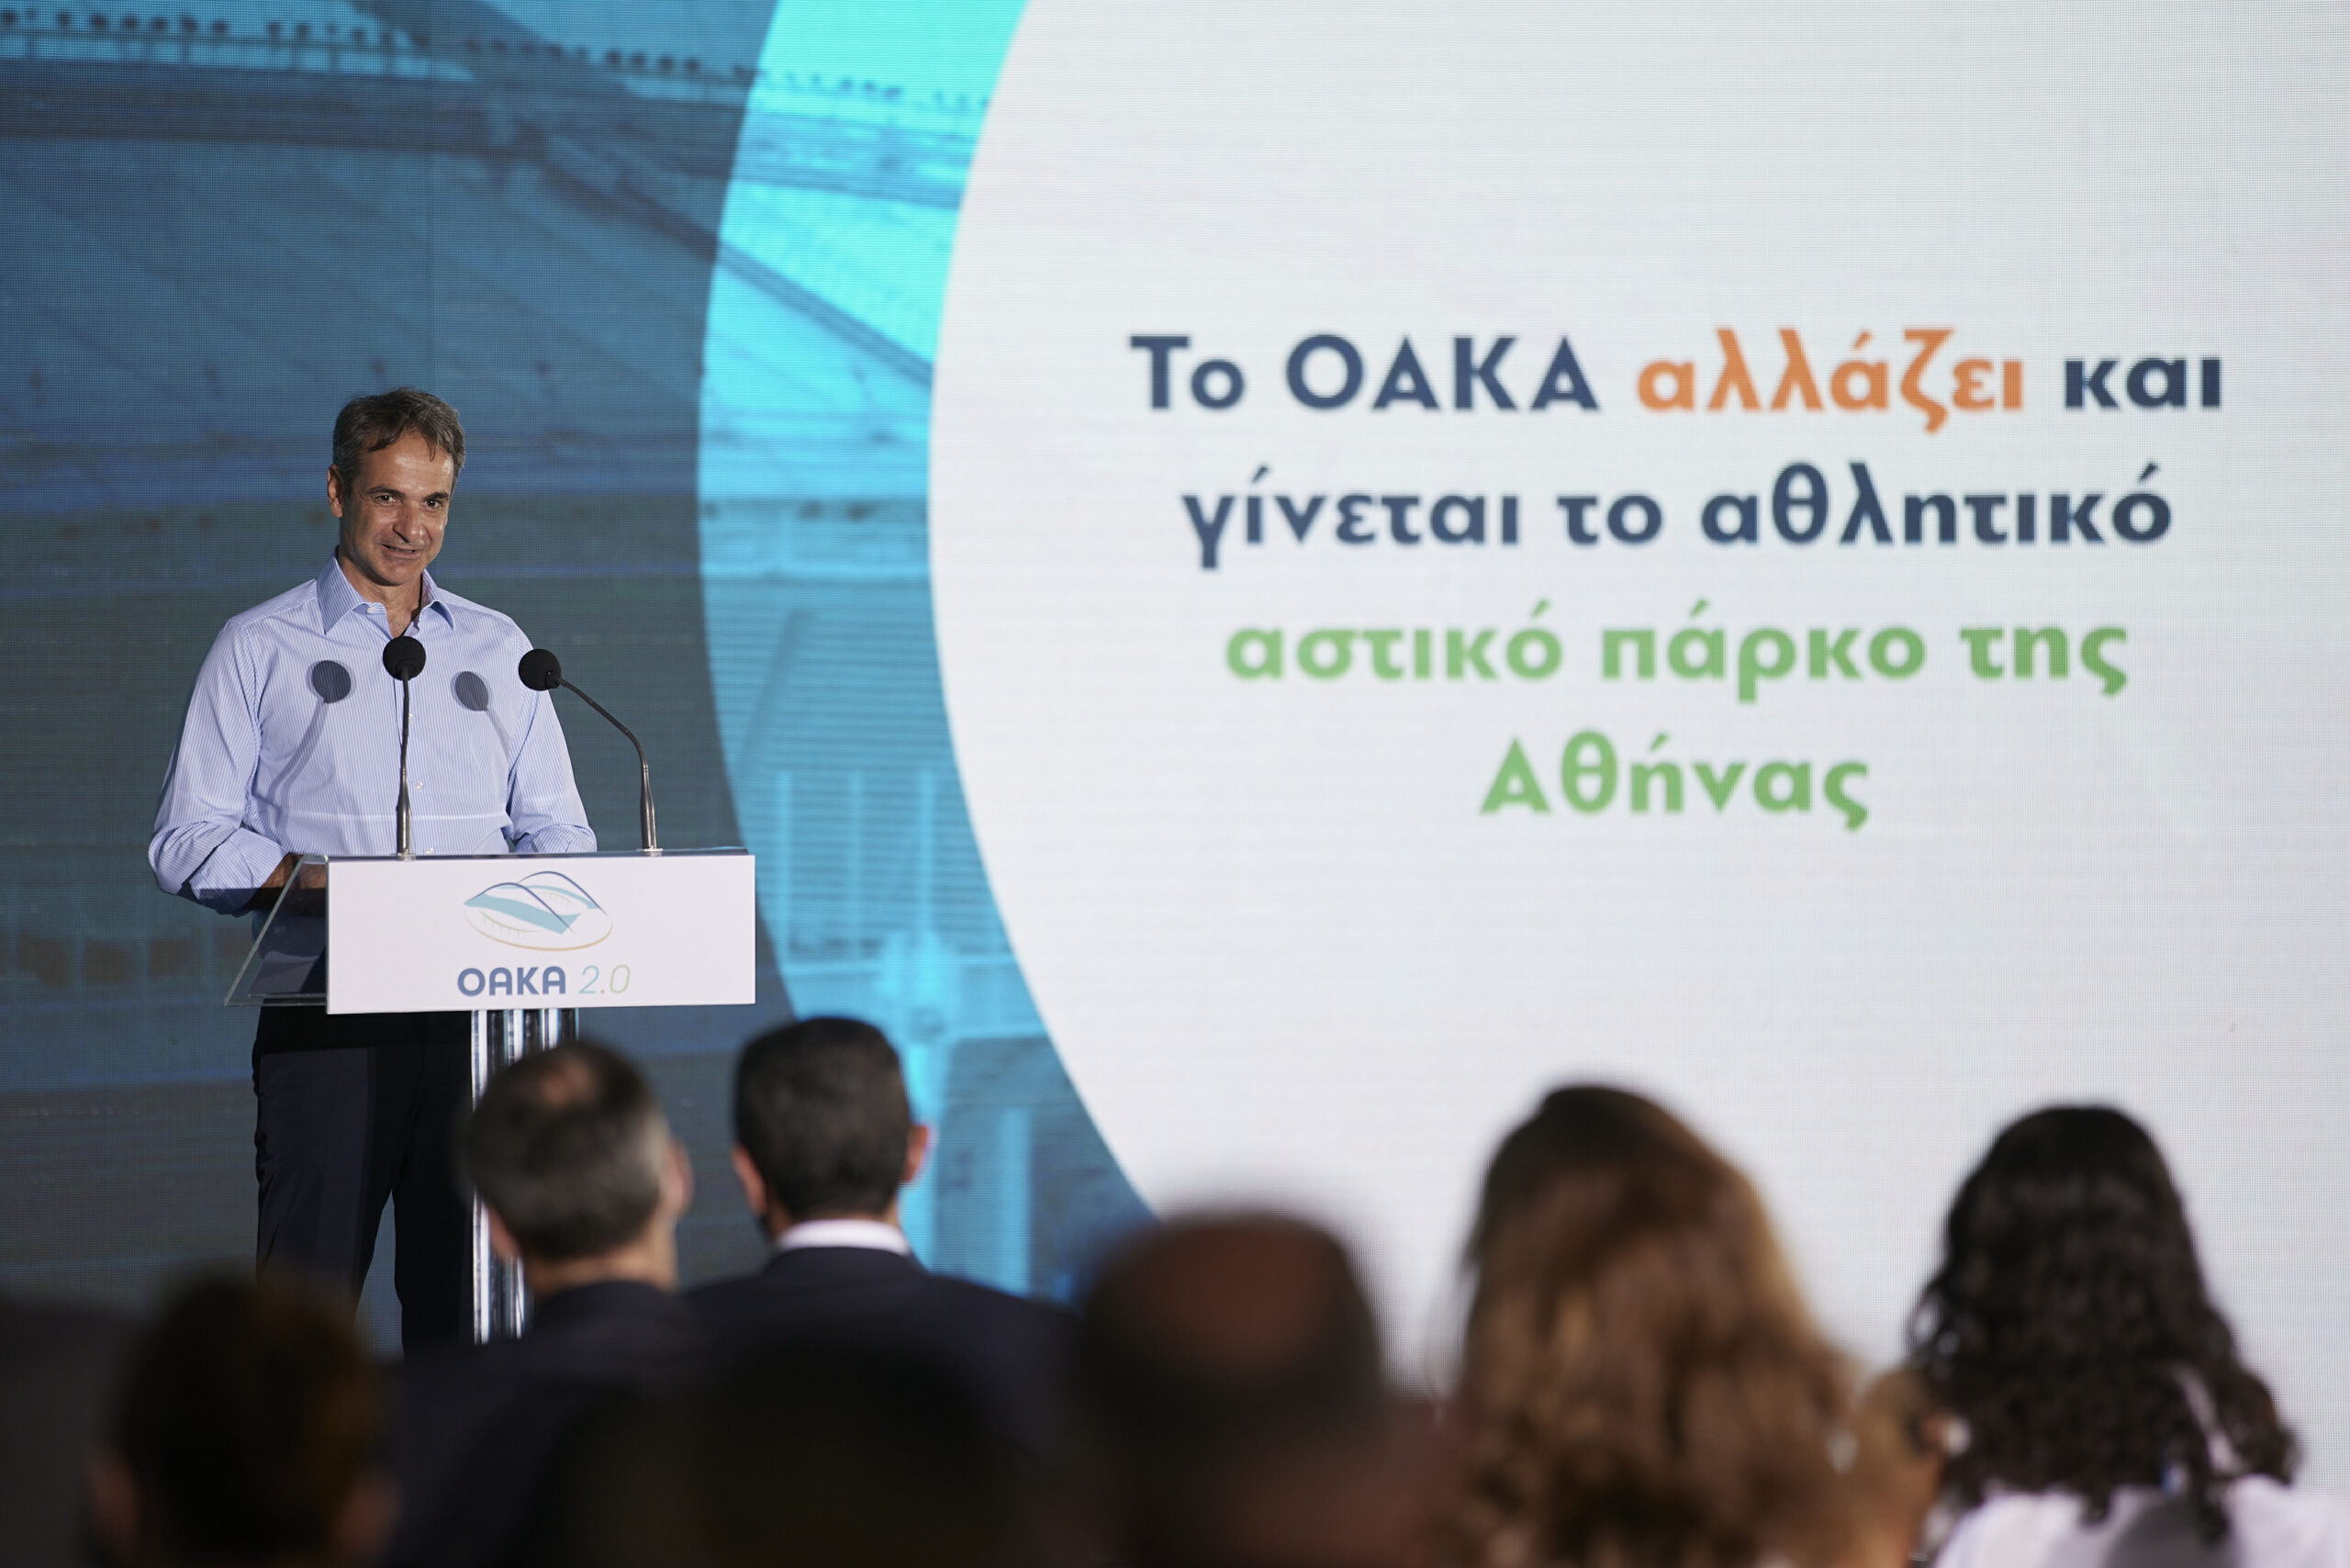 Κυρ. Μητσοτάκης: Το Ολυμπιακό Κέντρο μετατρέπεται σε Ολυμπιακό Πάρκο της Αθήνας